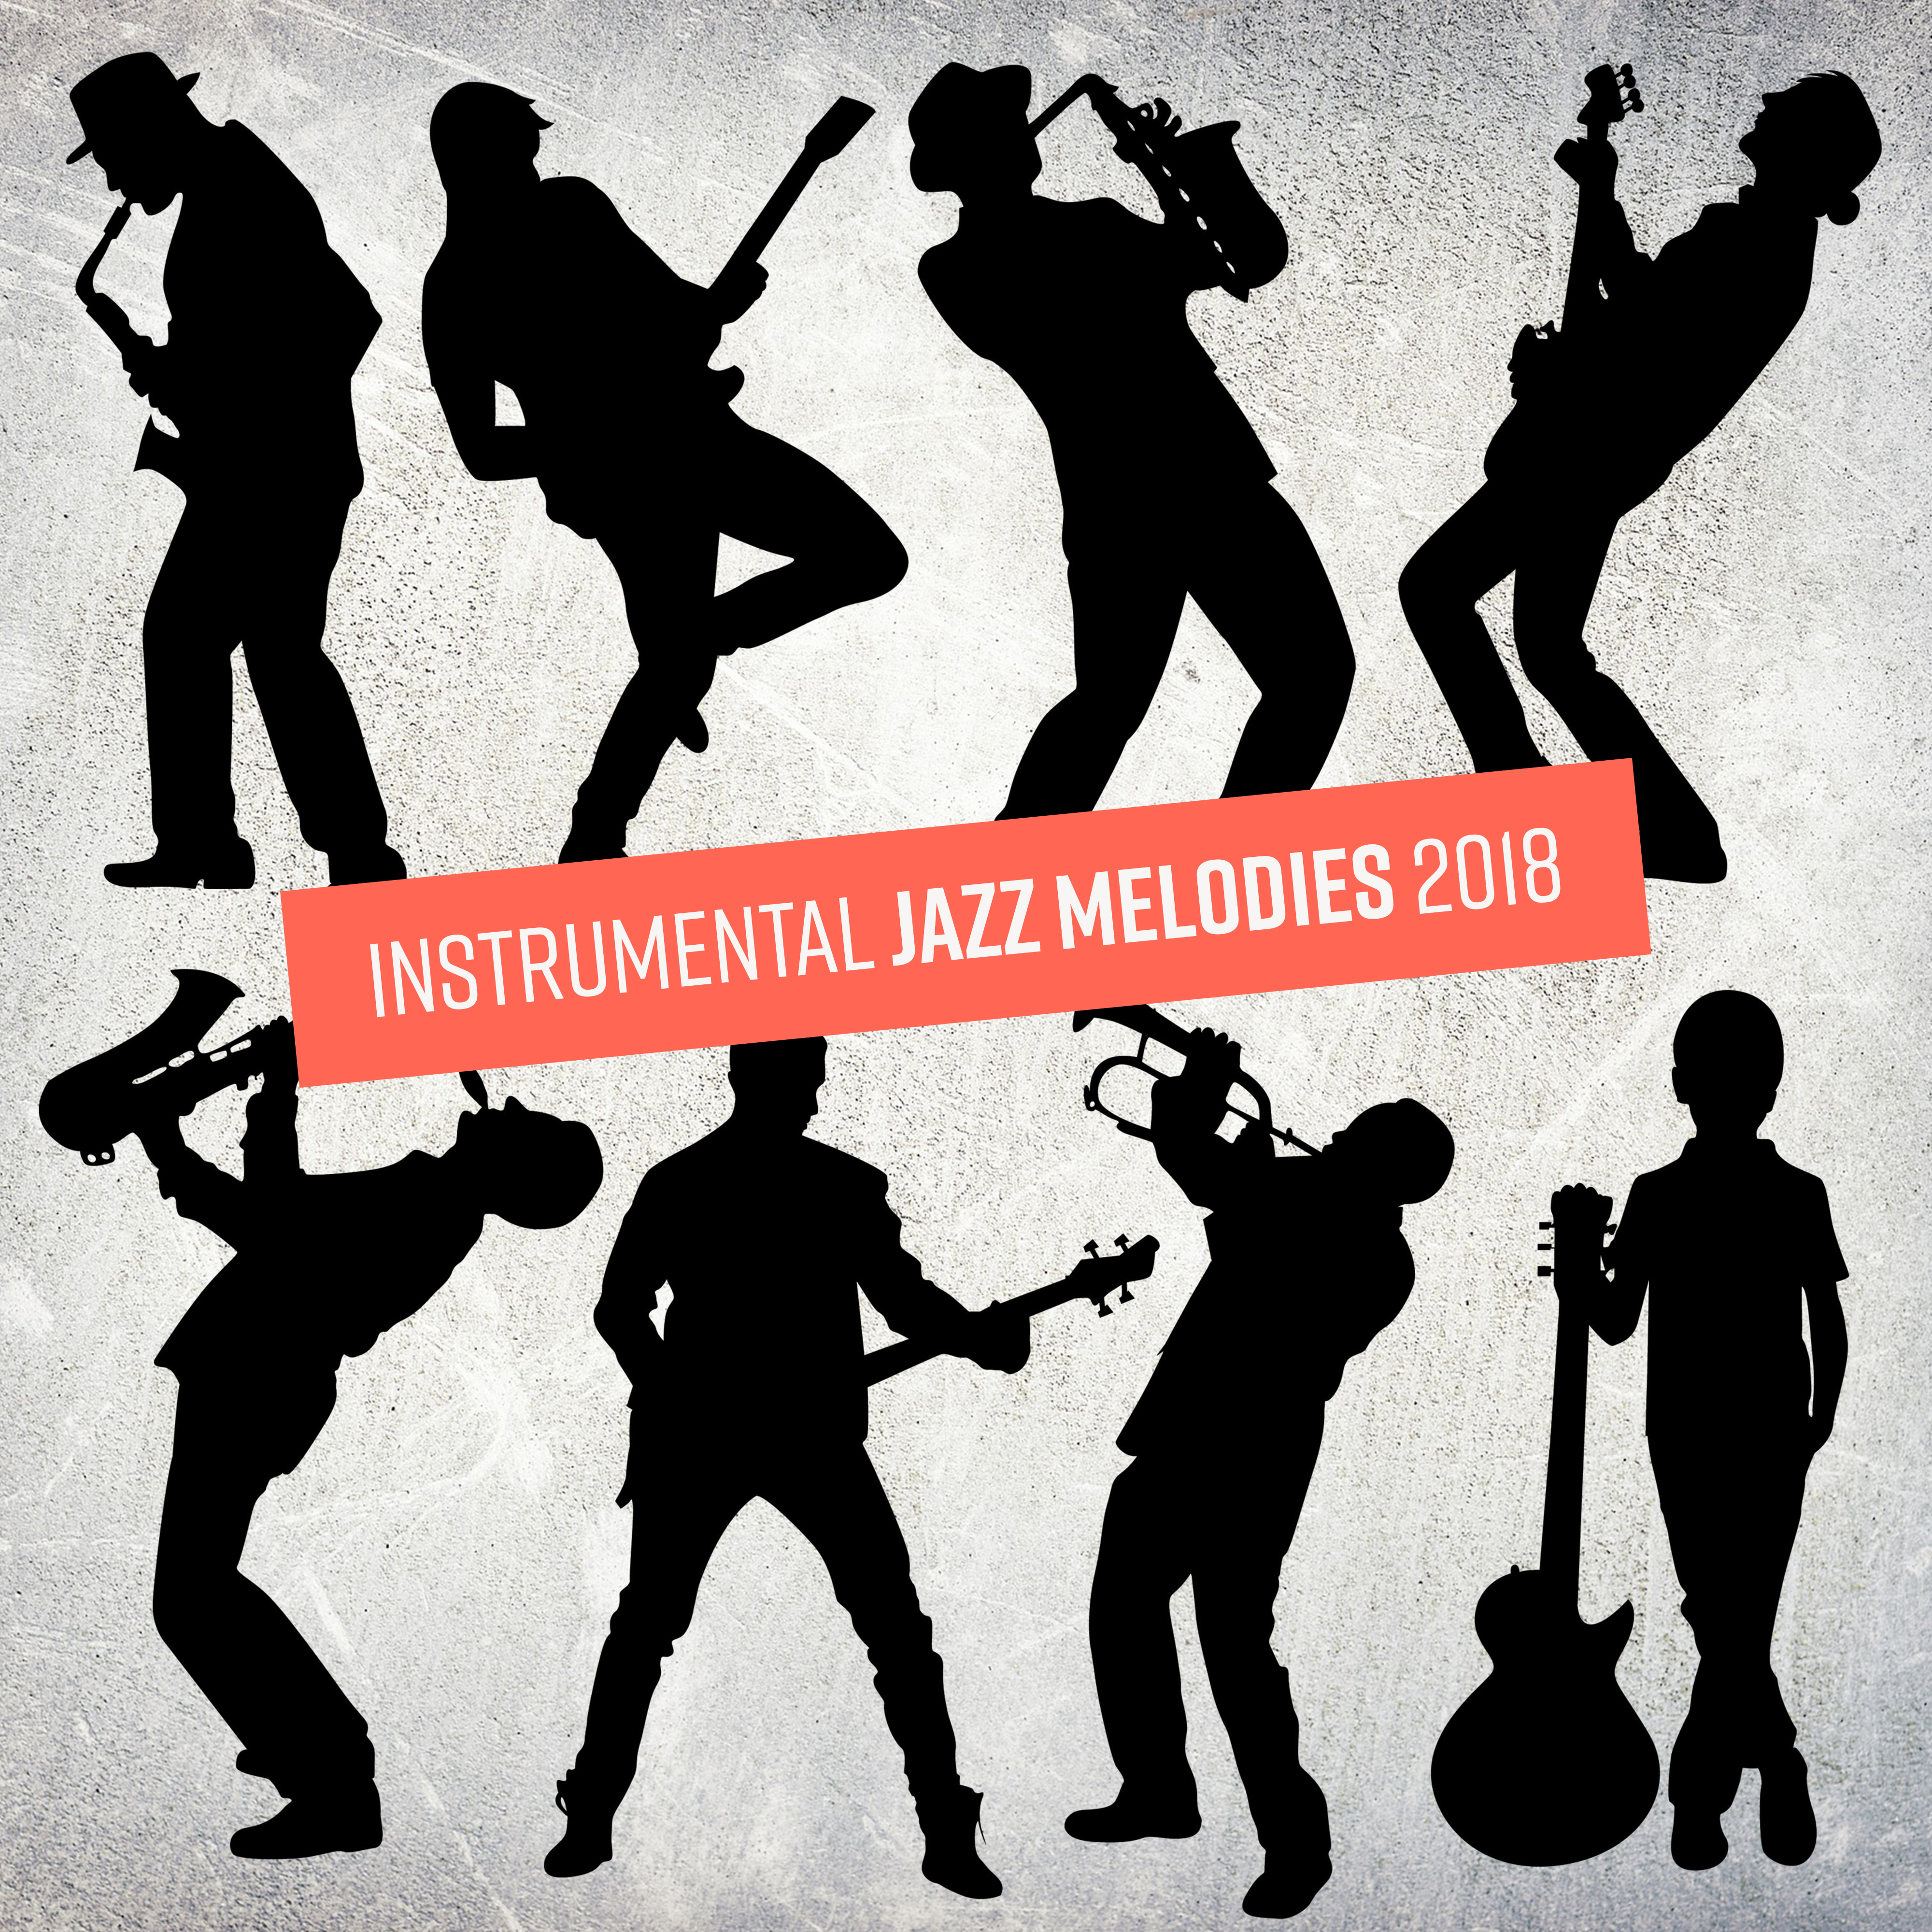 Instrumental Jazz Melodies 2018